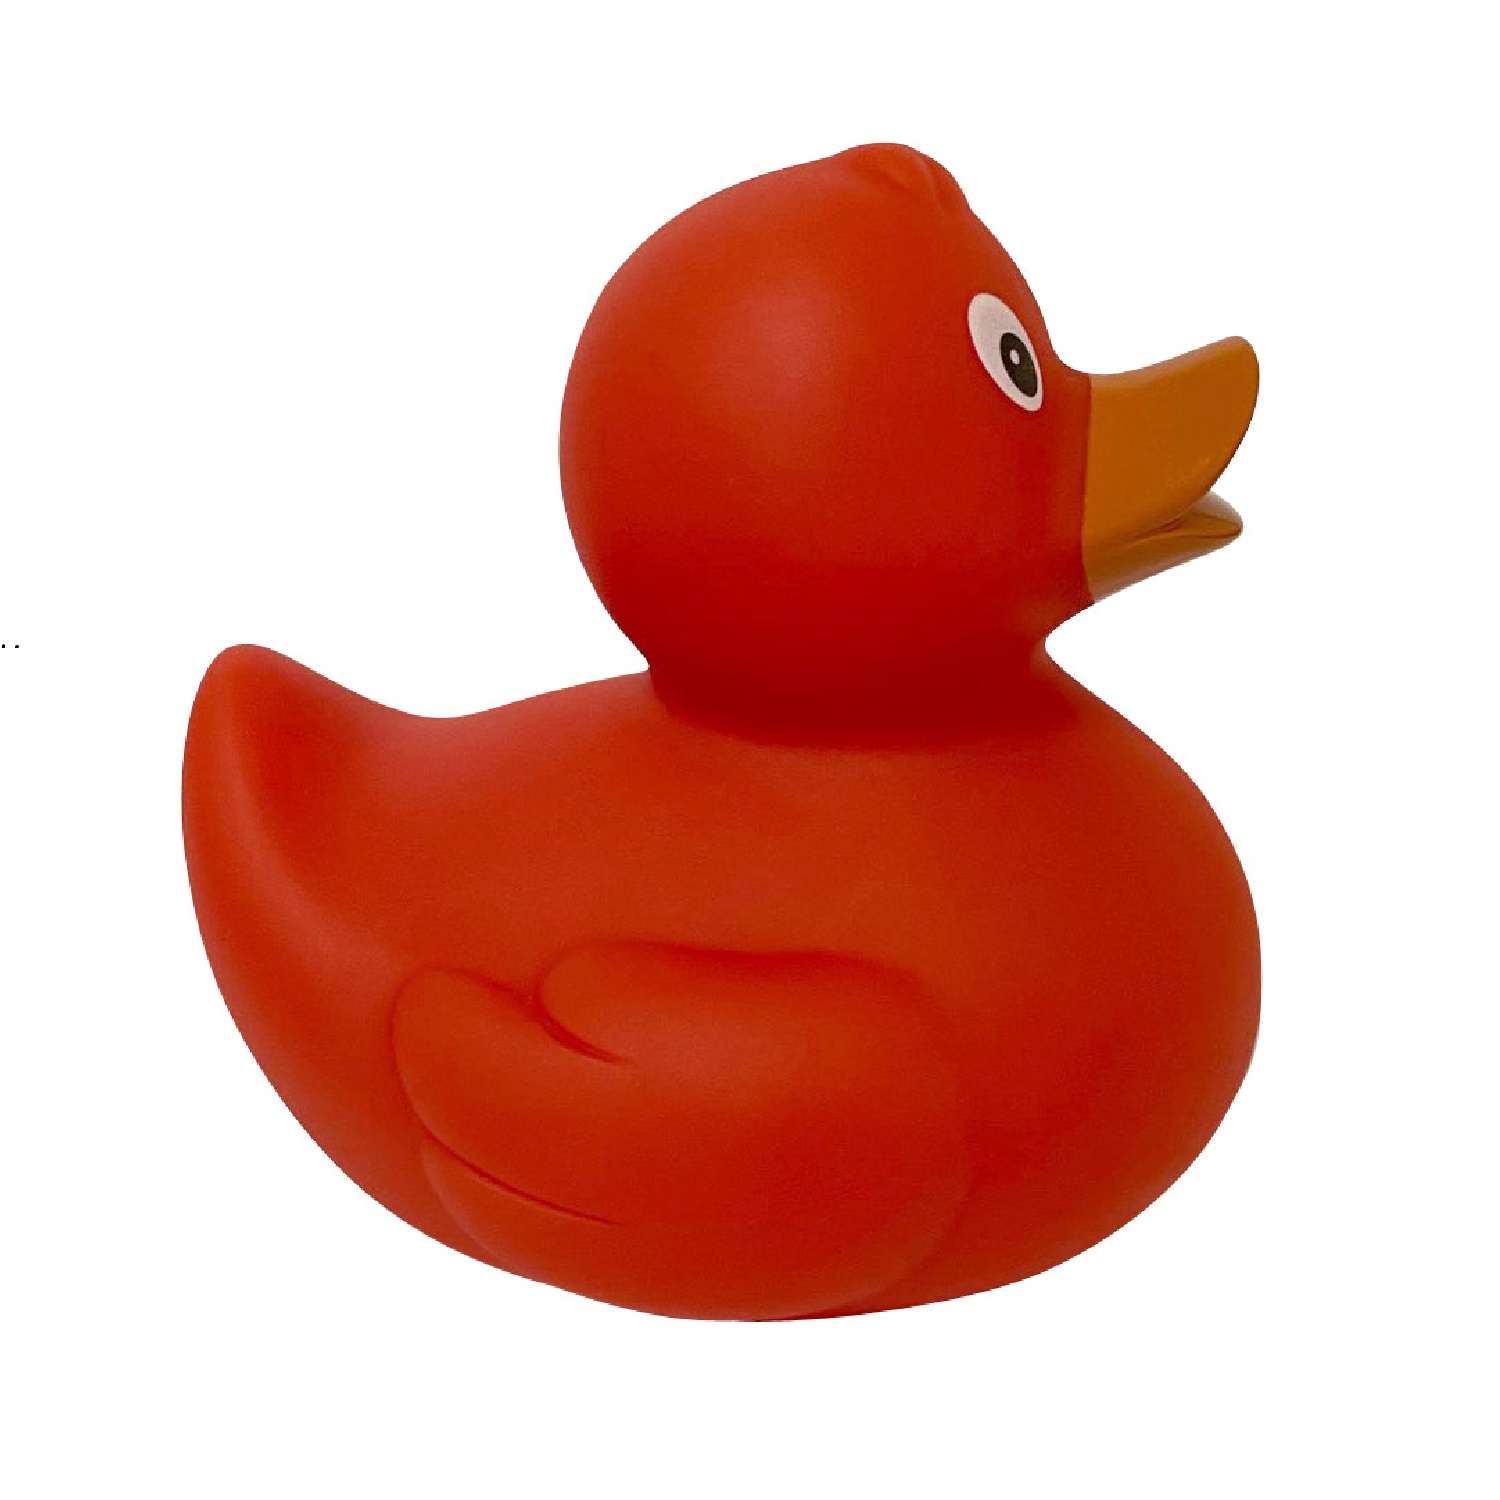 Игрушка Funny ducks для ванной Красная уточка 1305 - фото 2